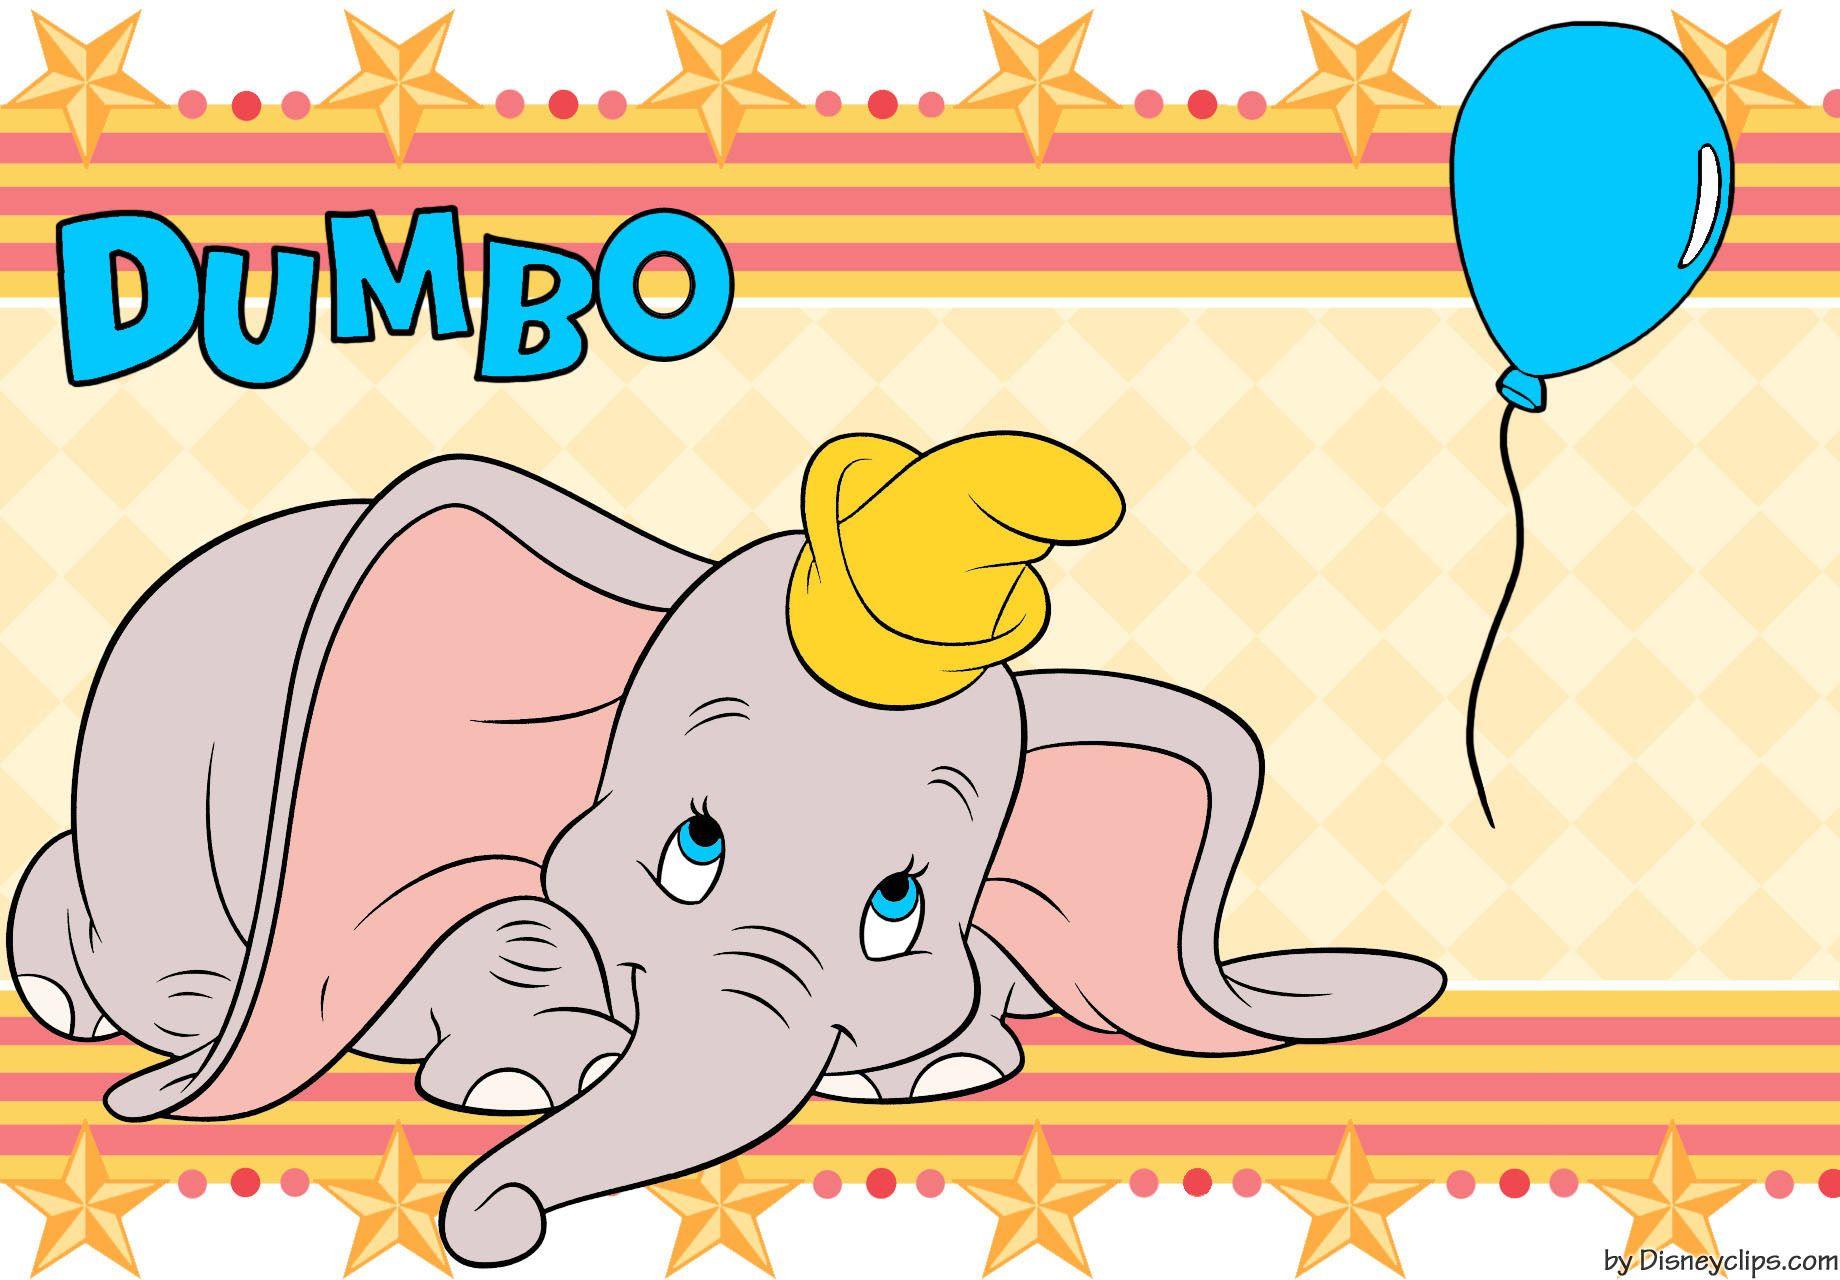 Dumbo Wallpaper. Disney's World of Wonders